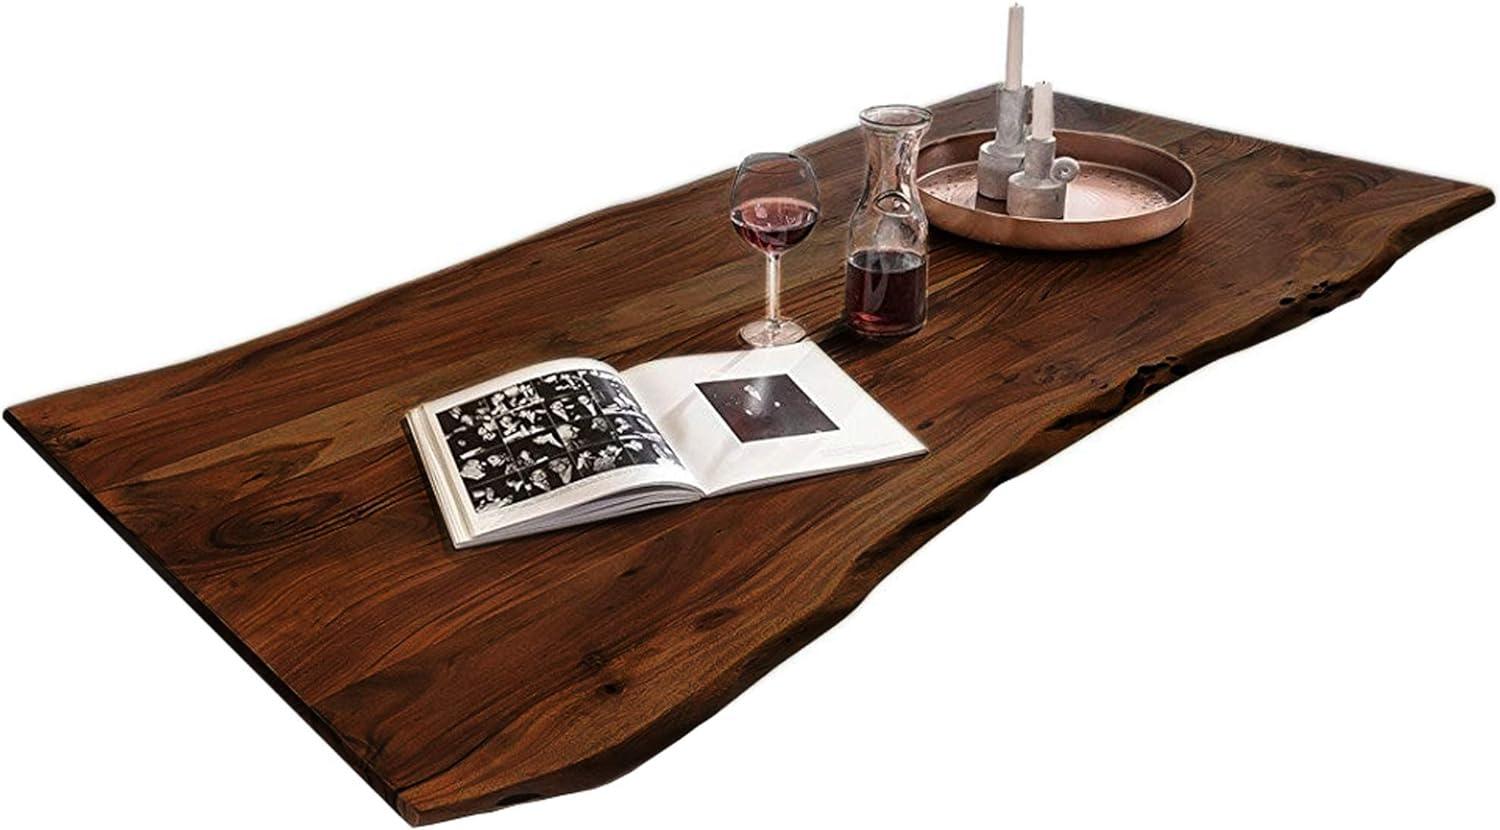 SAM Tischplatte 180x90 cm, Akazie massiv, nussbaumfarben, stilvolle Baumkanten-Platte, pflegeleichtes Unikat Bild 1